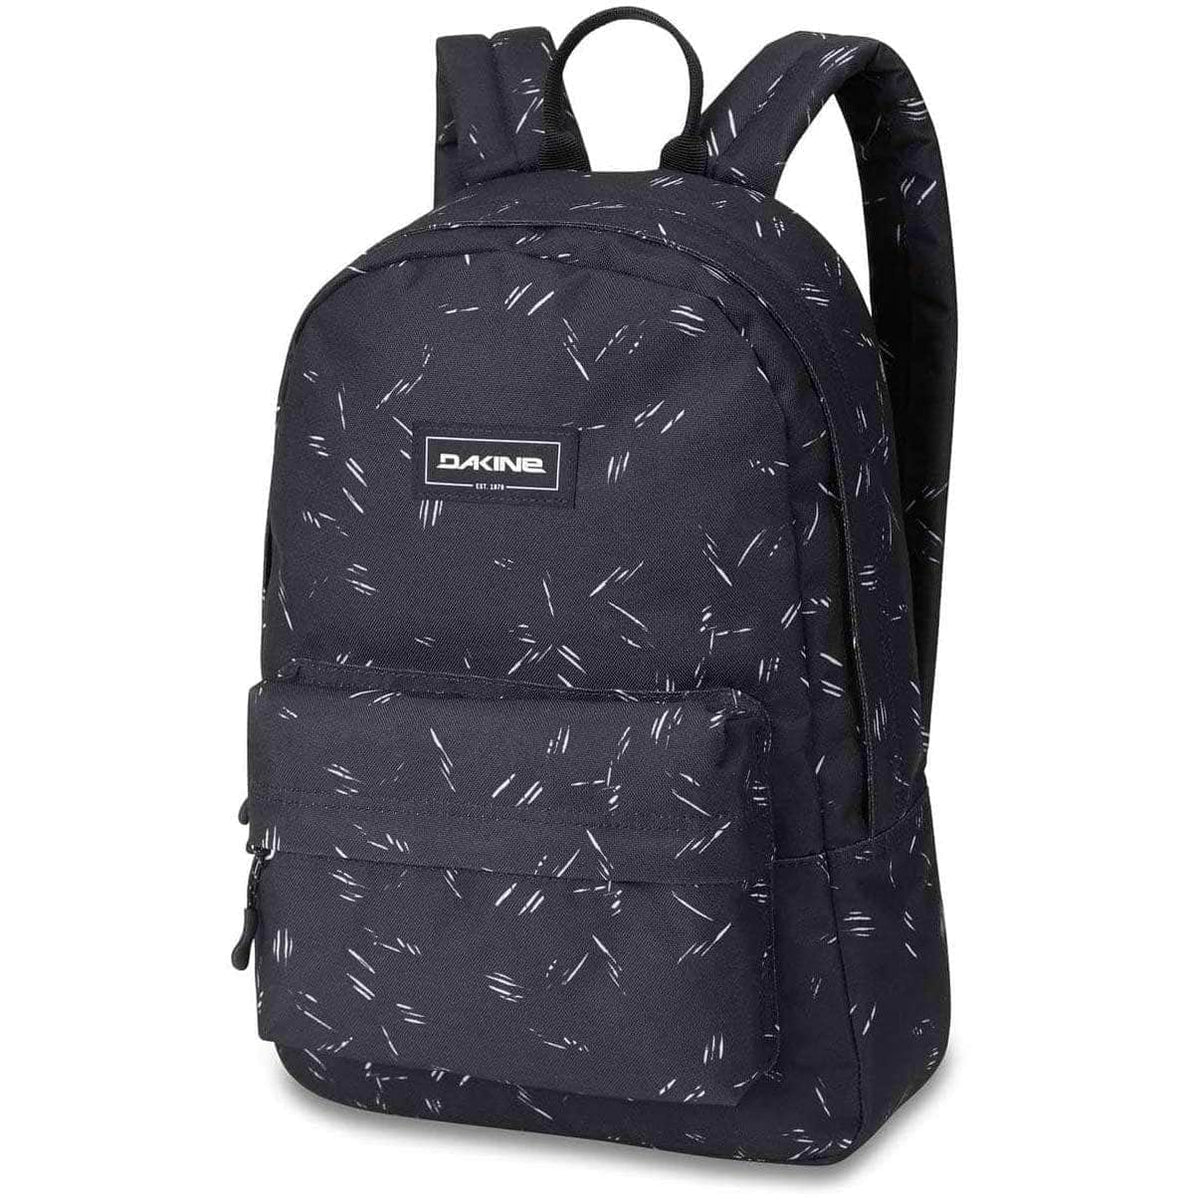 Dakine 365 Mini 12L Kids Backpack - Slashdot - Backpack by Dakine 12L